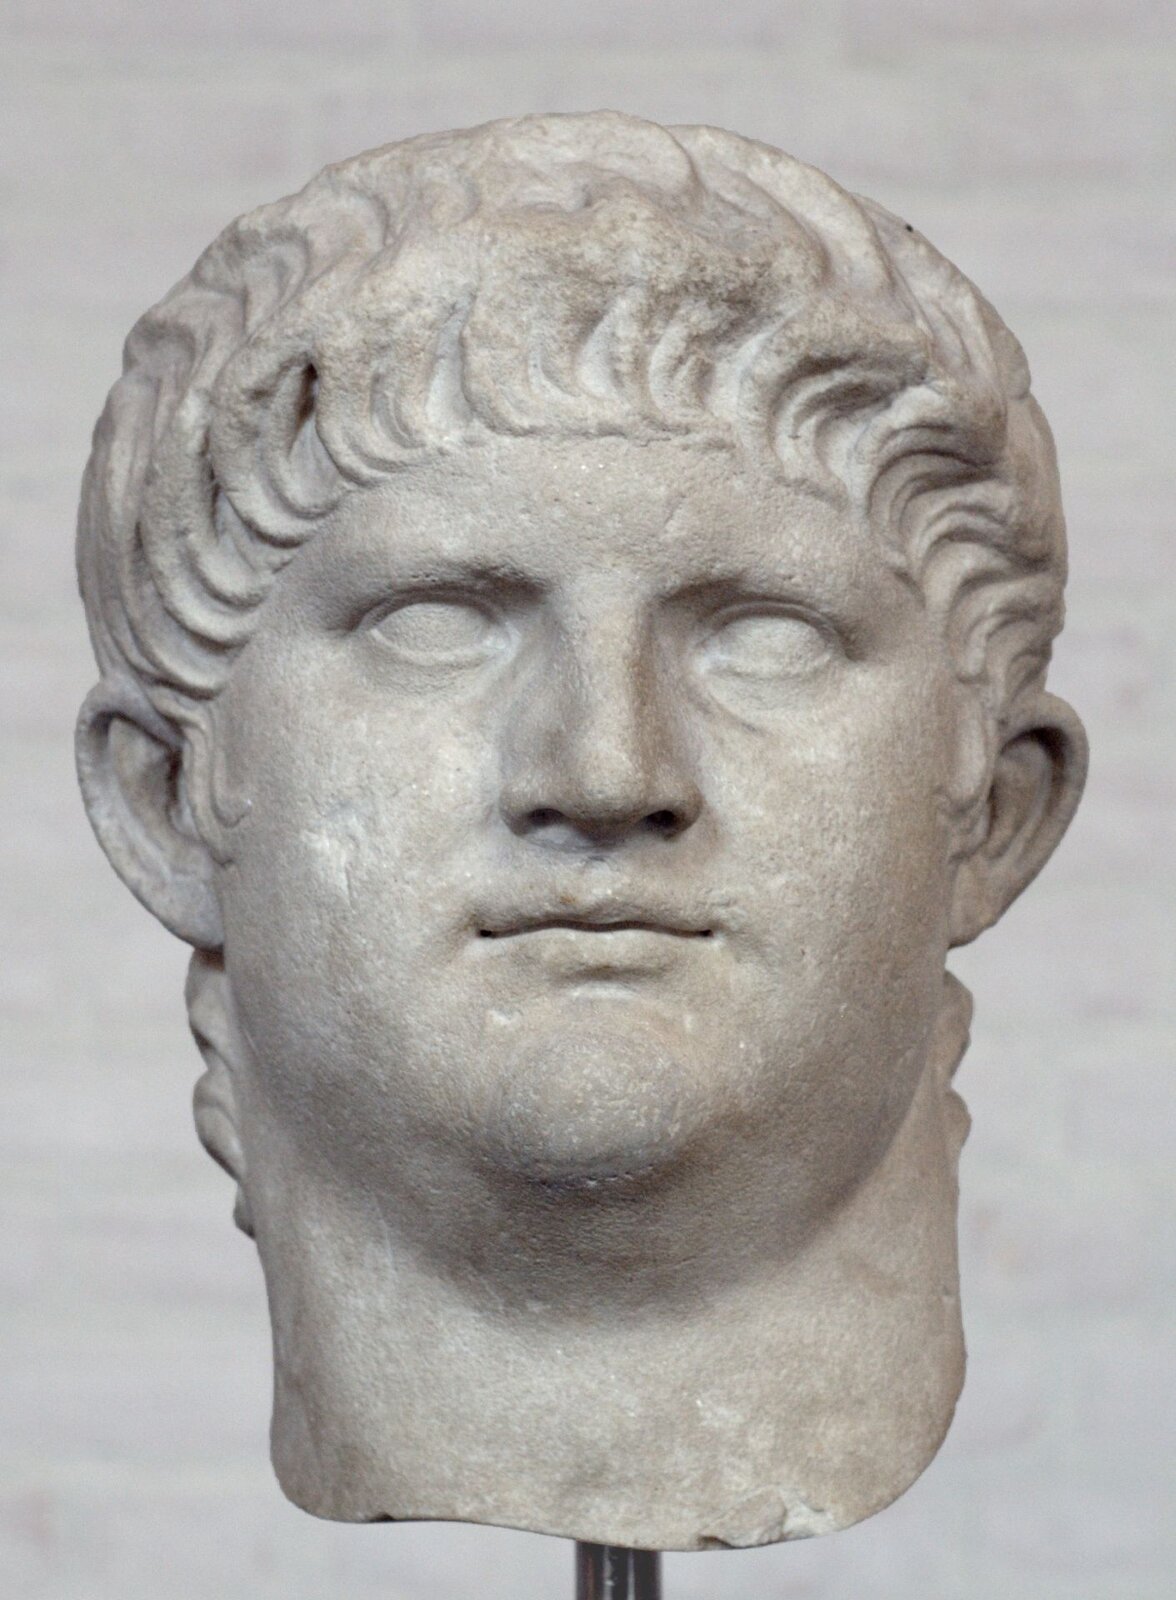 Ilustracja przedstawia rzeźbę głowy Nerona z białego marmuru. Jest to mężczyzna z krótkimi włosami opadającymi na czoło. Ma niewielkie zamknięte usta. Oczy nie mają wyrzeźbionych źrenic. Twarz jest okrągła.